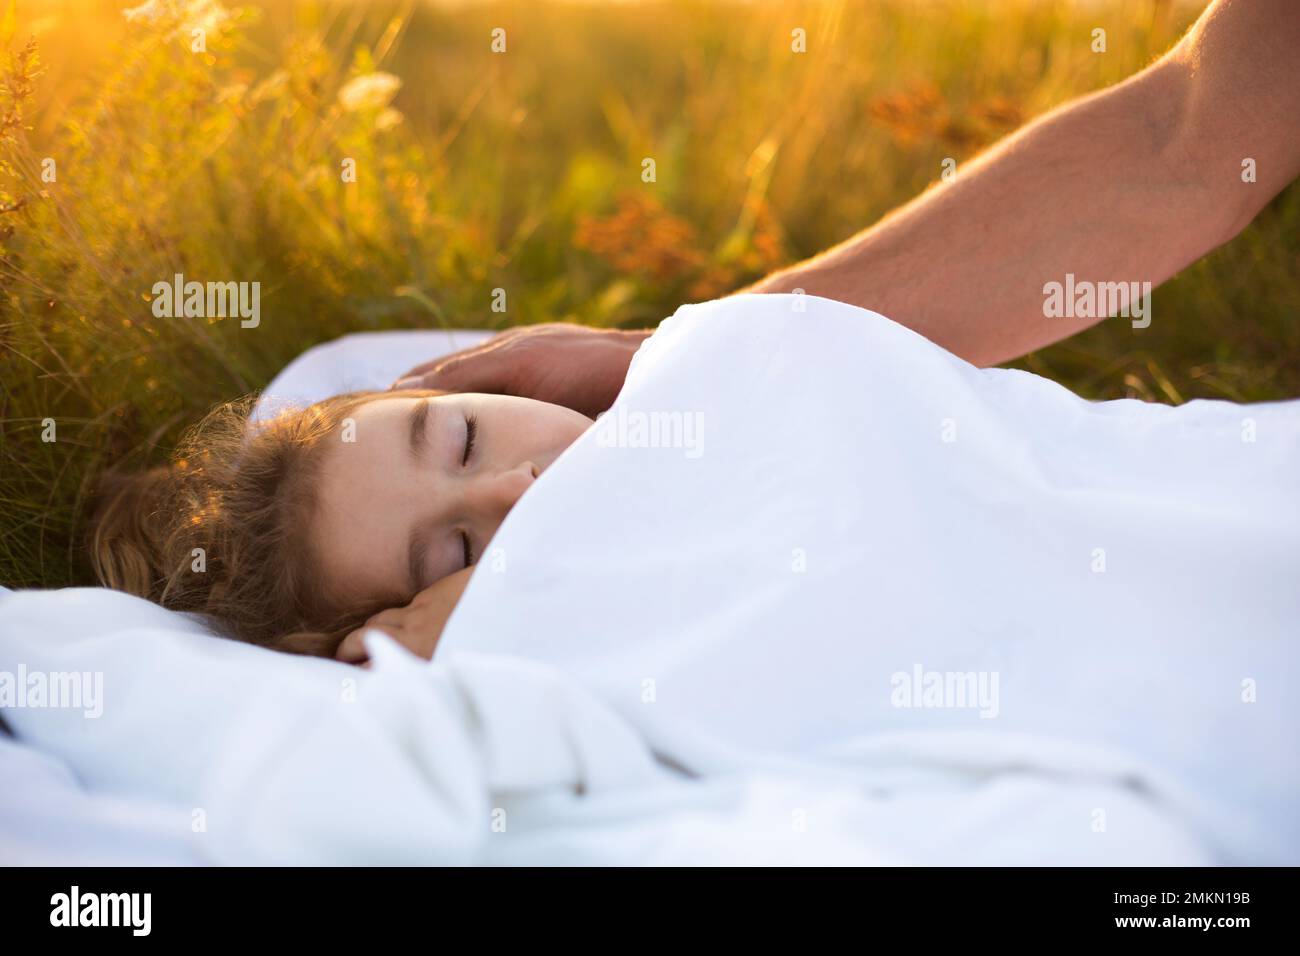 Mädchen schläft auf weißem Bett im Gras, frische Luft. Dads Hand klopft ihm sanft auf den Kopf. Pflege, Schutz, Internationaler Kindertag, Mückenstiche Stockfoto